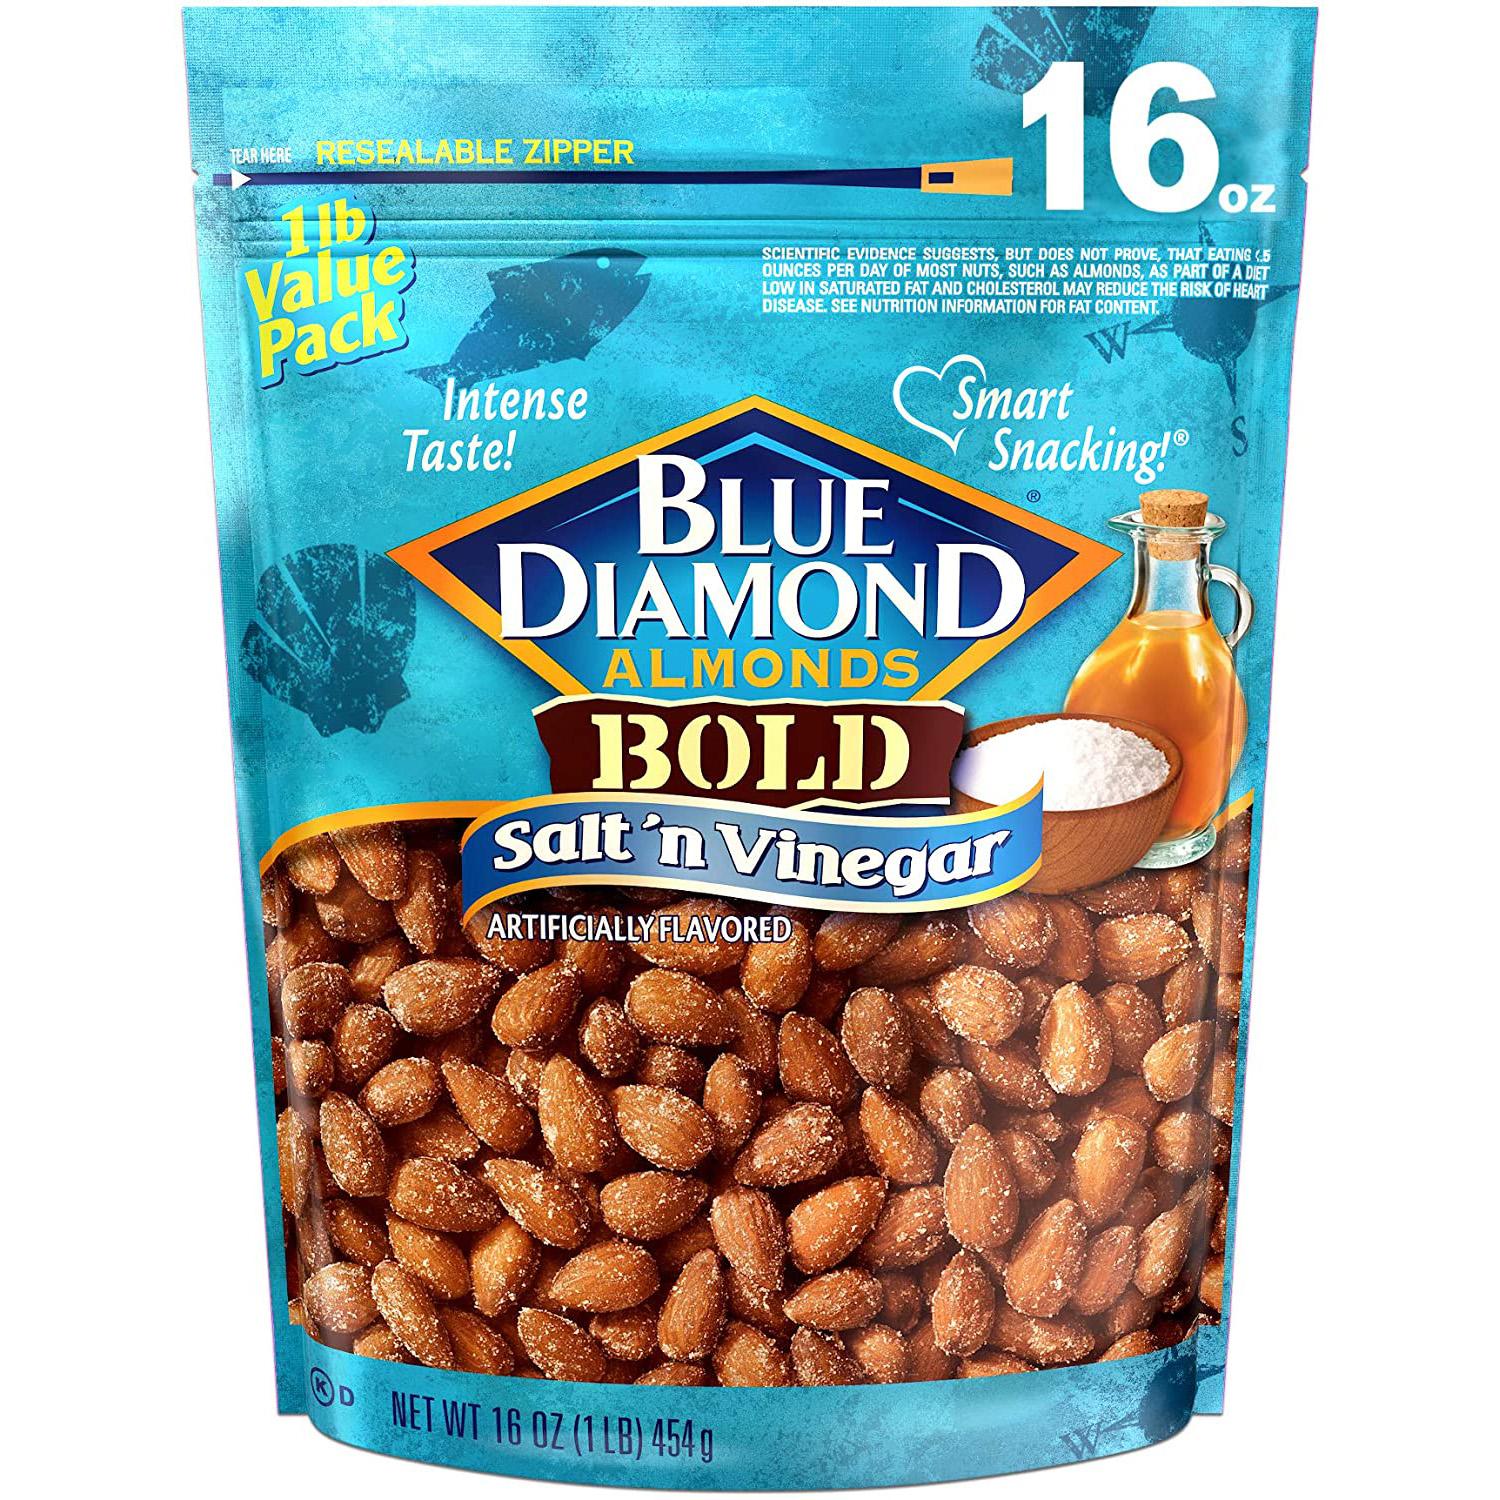 Blue Diamond Almonds Bold Salt n Vinegar for $4.79 Shipped